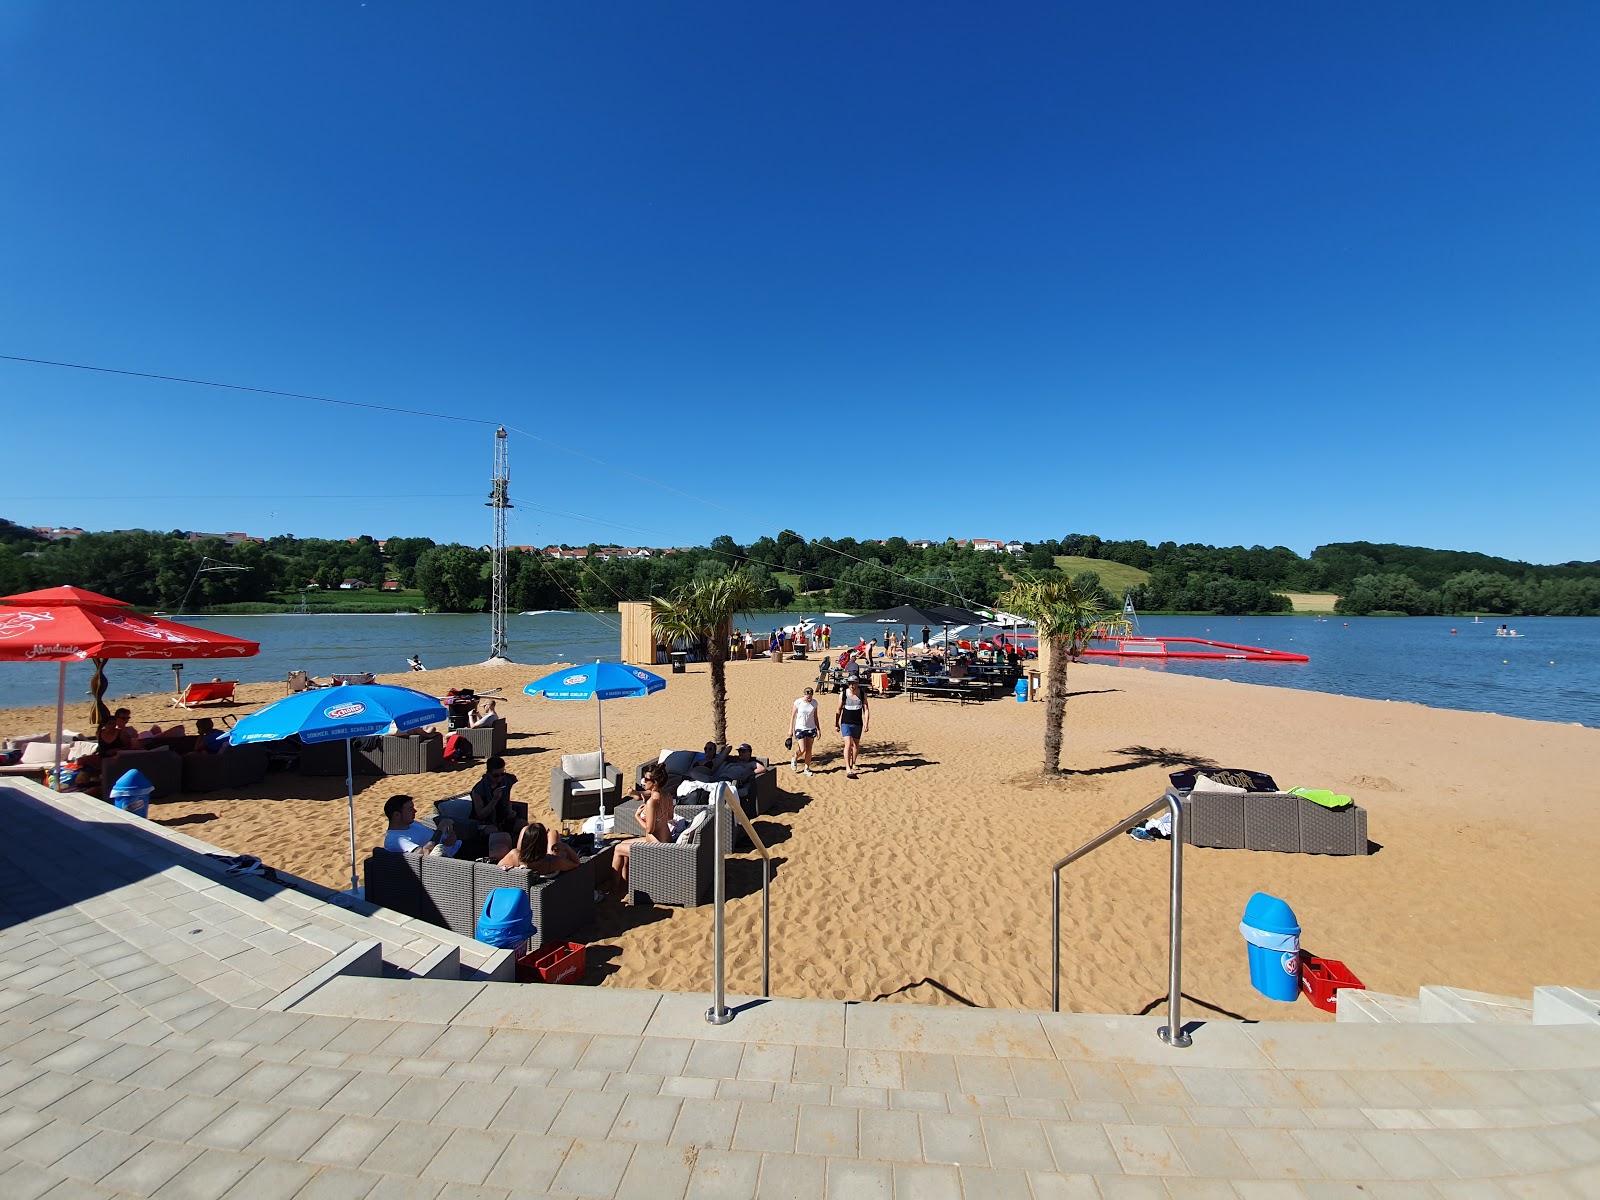 Foto av Spielplatz Wakepark Brombachsee med rymlig strand